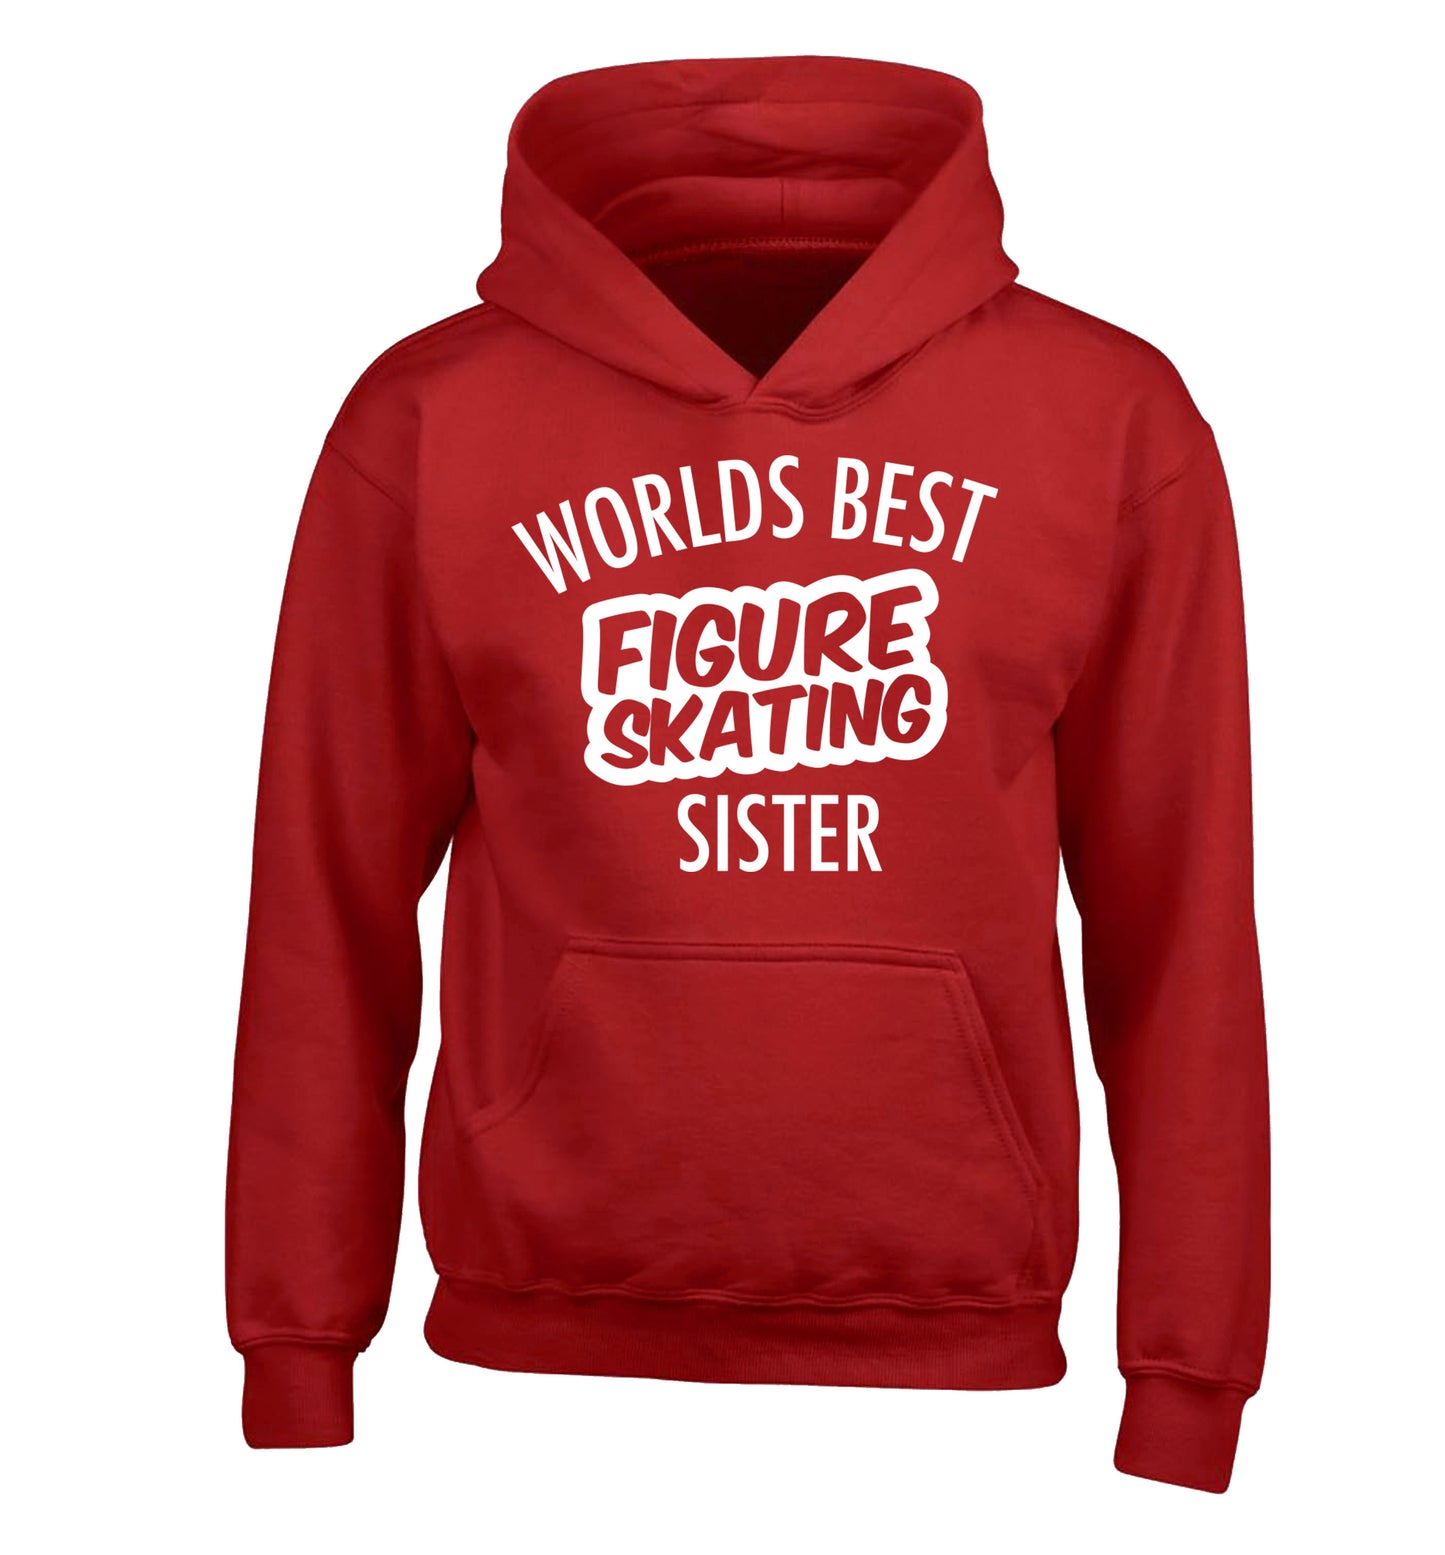 Worlds best figure skating sisterchildren's red hoodie 12-14 Years